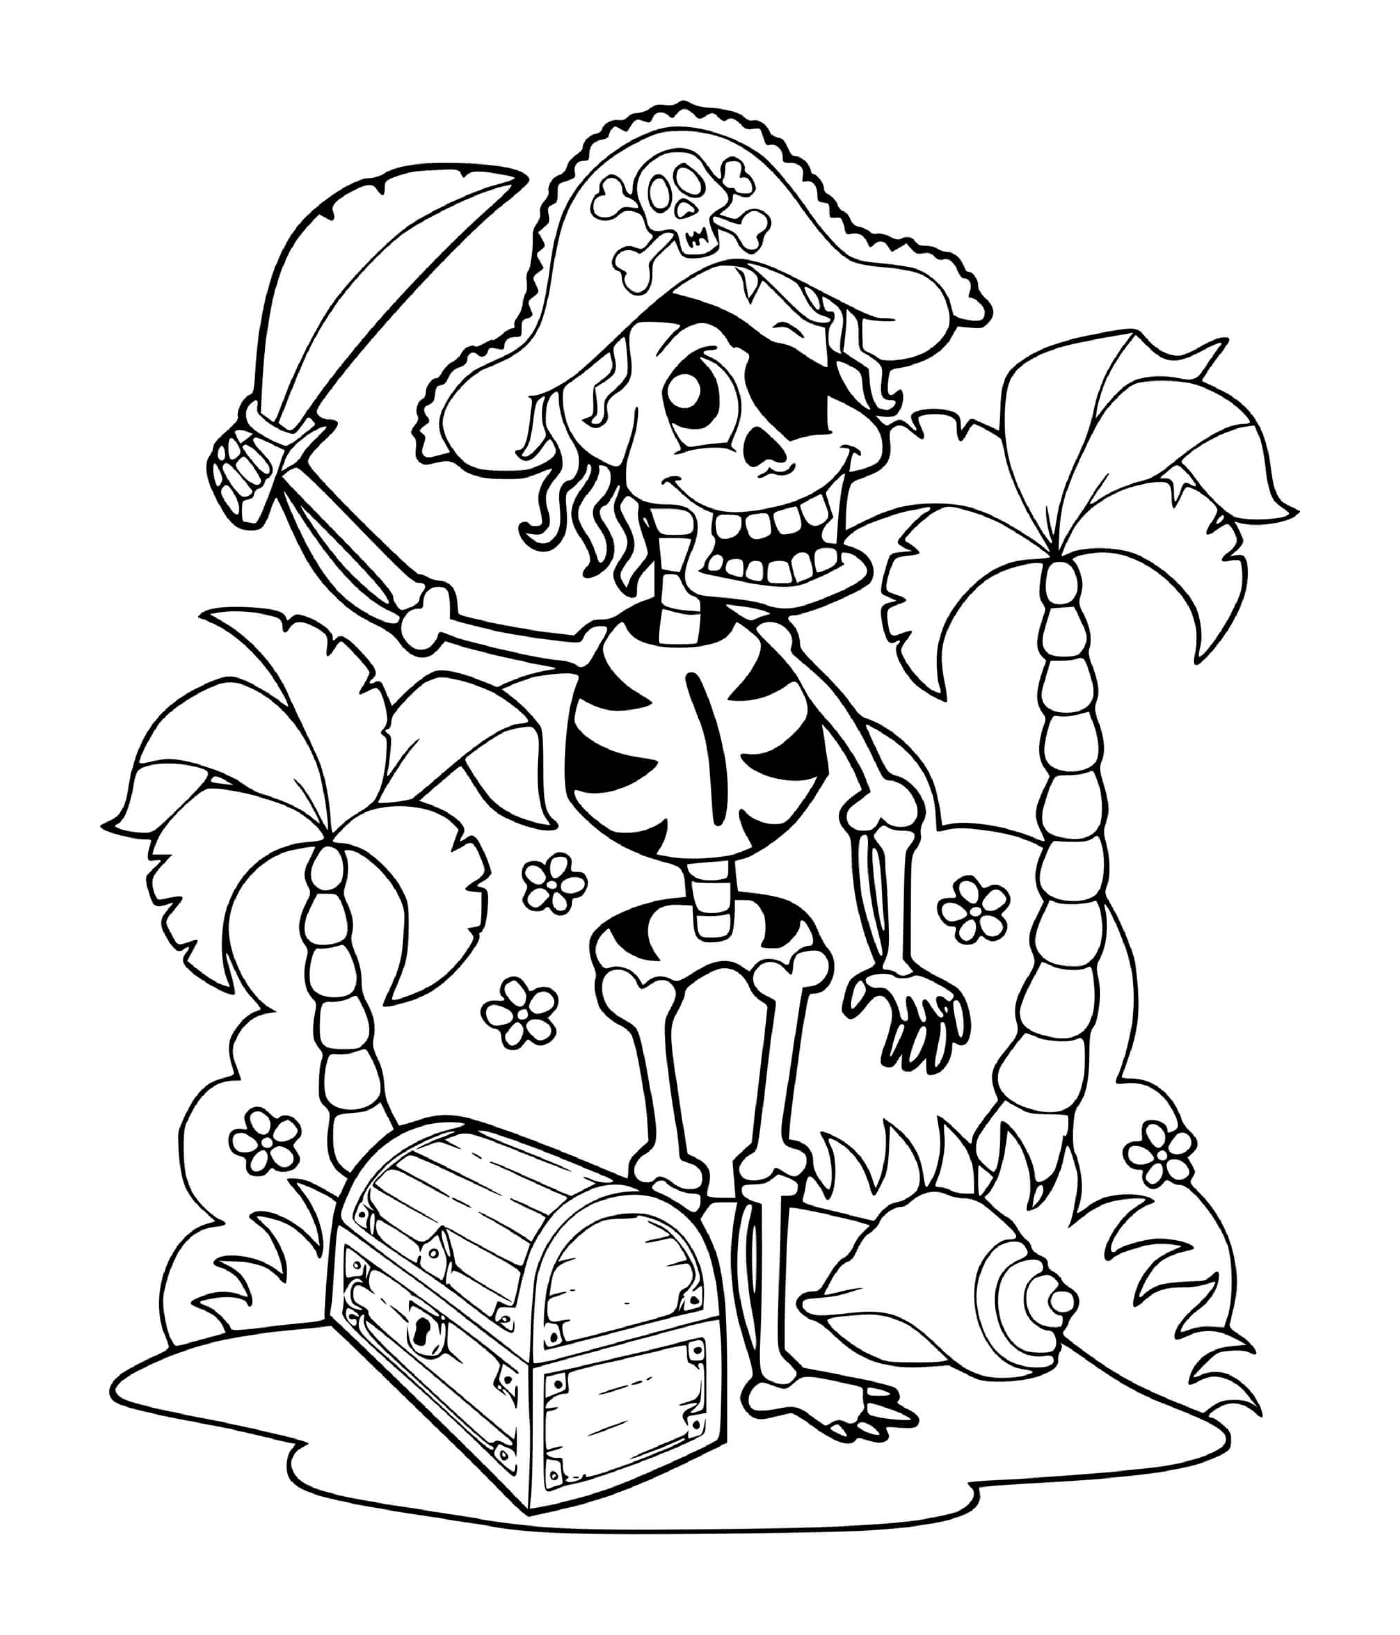 coloriage squelette pirate sur une ile avec un tresor